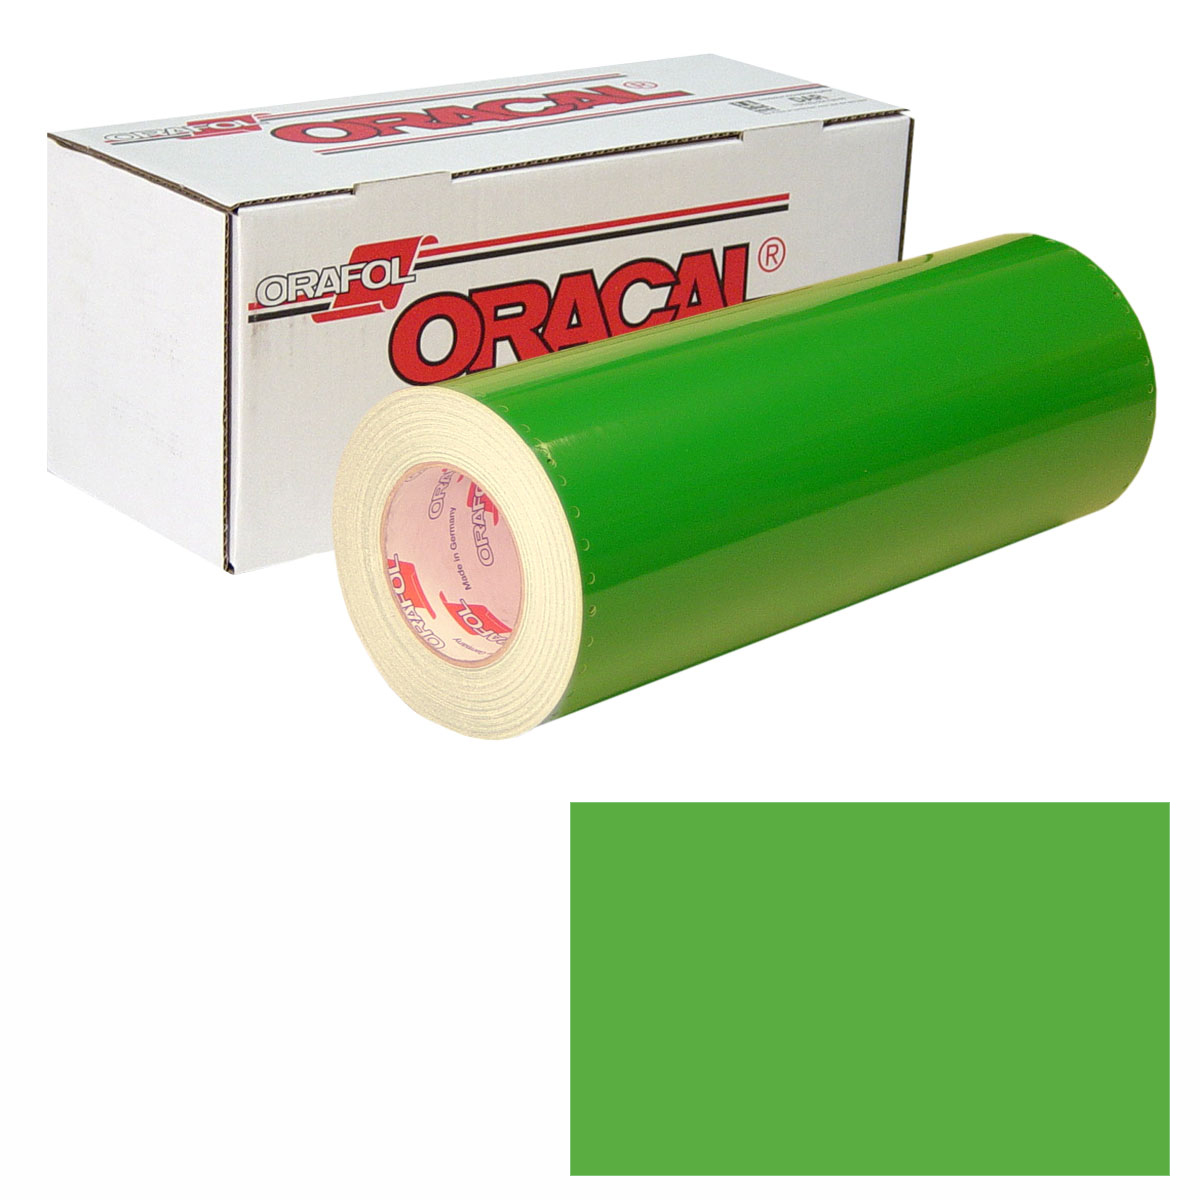 Oracal 651 Adhesive Vinyl 613 Forest green – MyVinylCircle